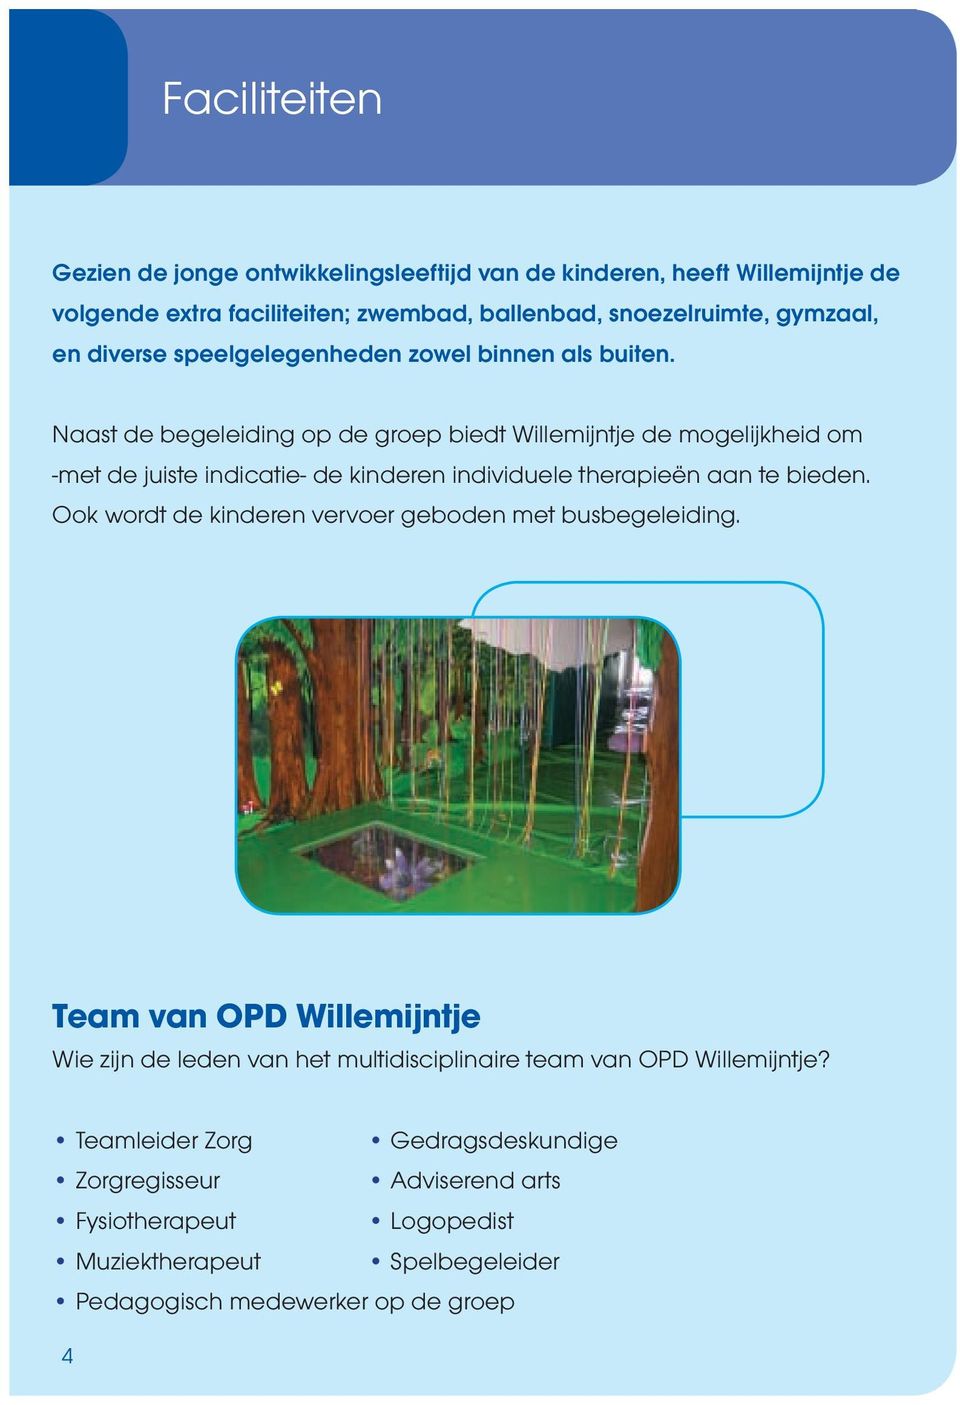 Naast de begeleiding op de groep biedt Willemijntje de mogelijkheid om -met de juiste indicatie- de kinderen individuele therapieën aan te bieden.